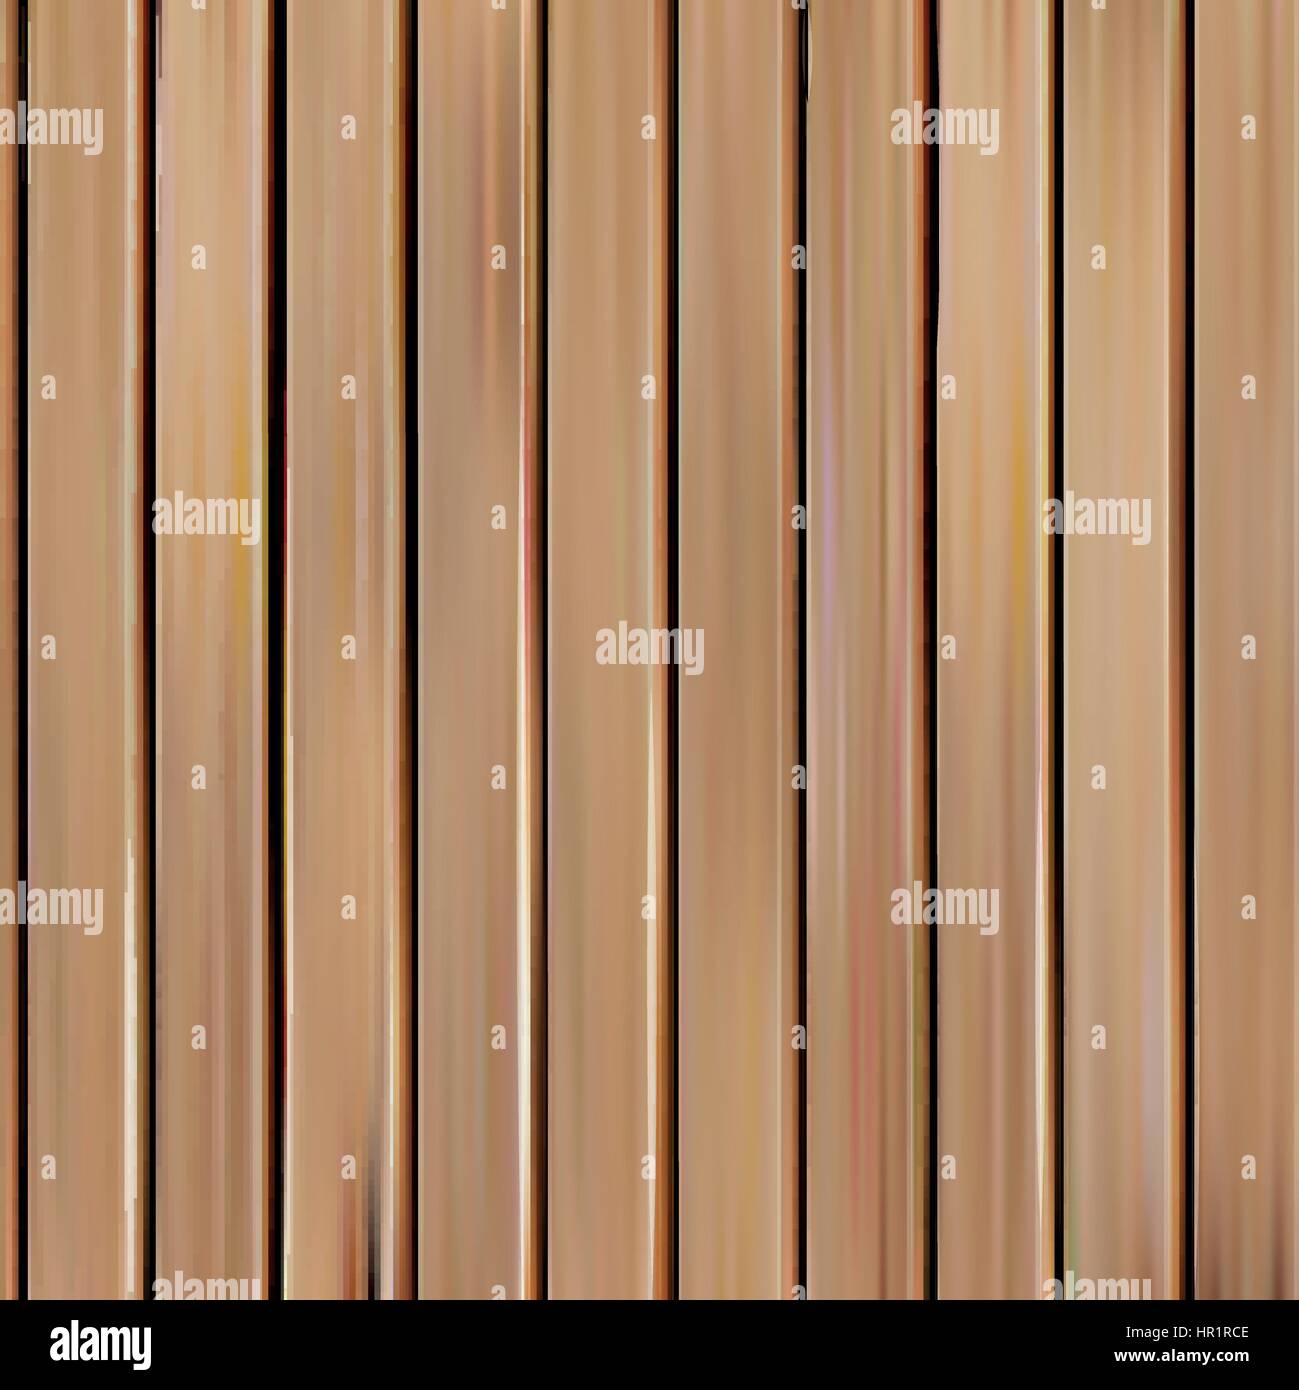 Transparente texture réaliste isolés en bois d'illustration vectorielle, conseils d'arrière-plan. verticale Illustration de Vecteur